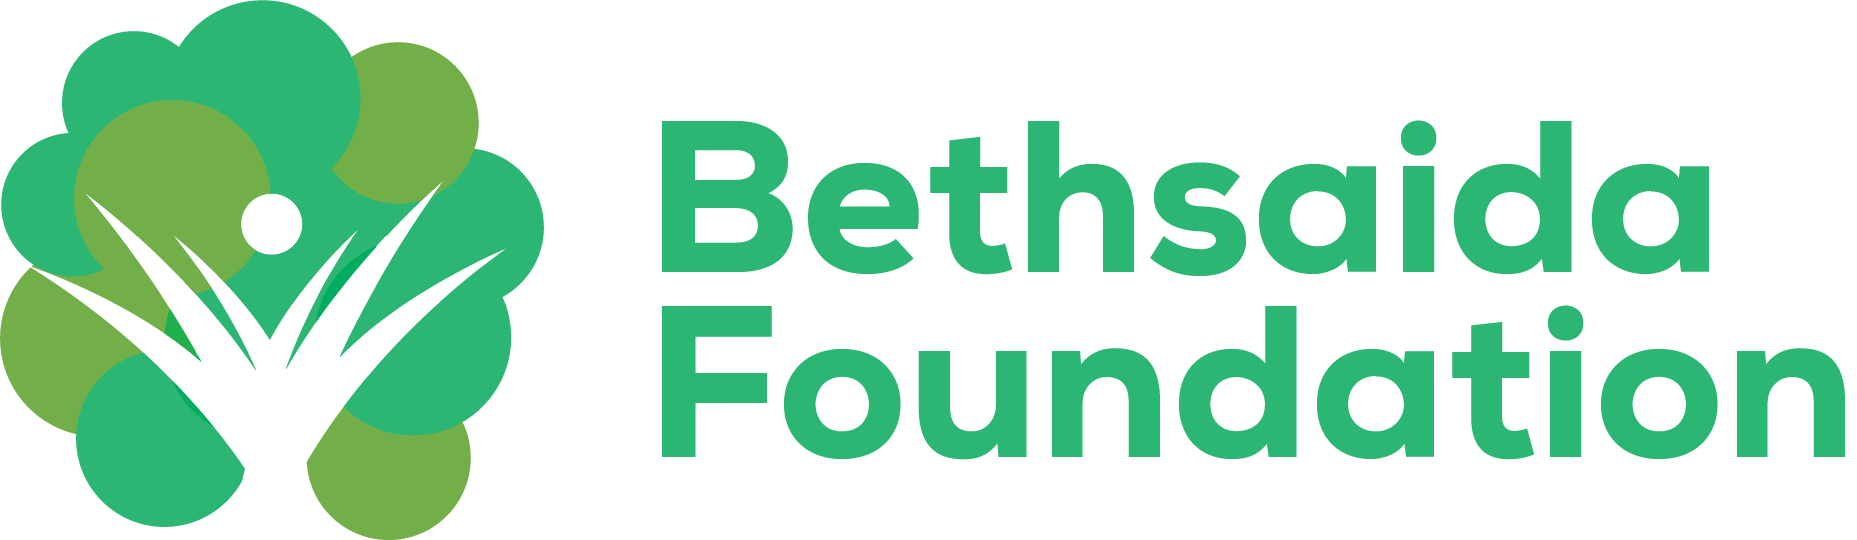 Bethsaida Foundation